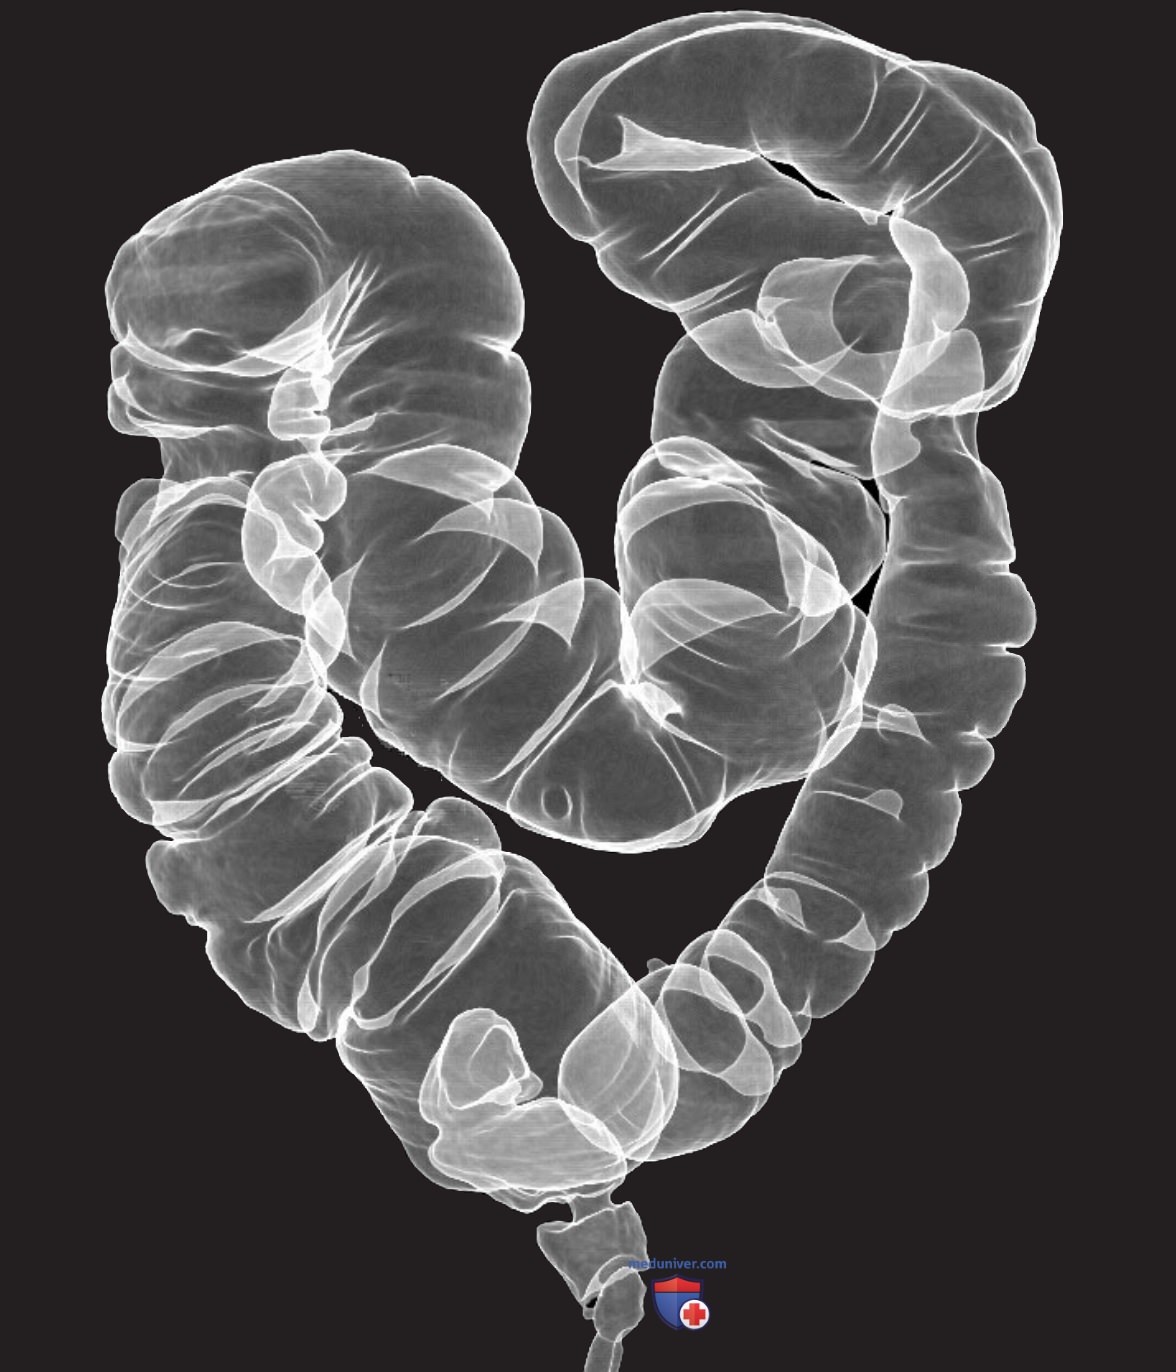 Анатомия толстой кишки на КТ колонографии (виртуальной колоноскопии)